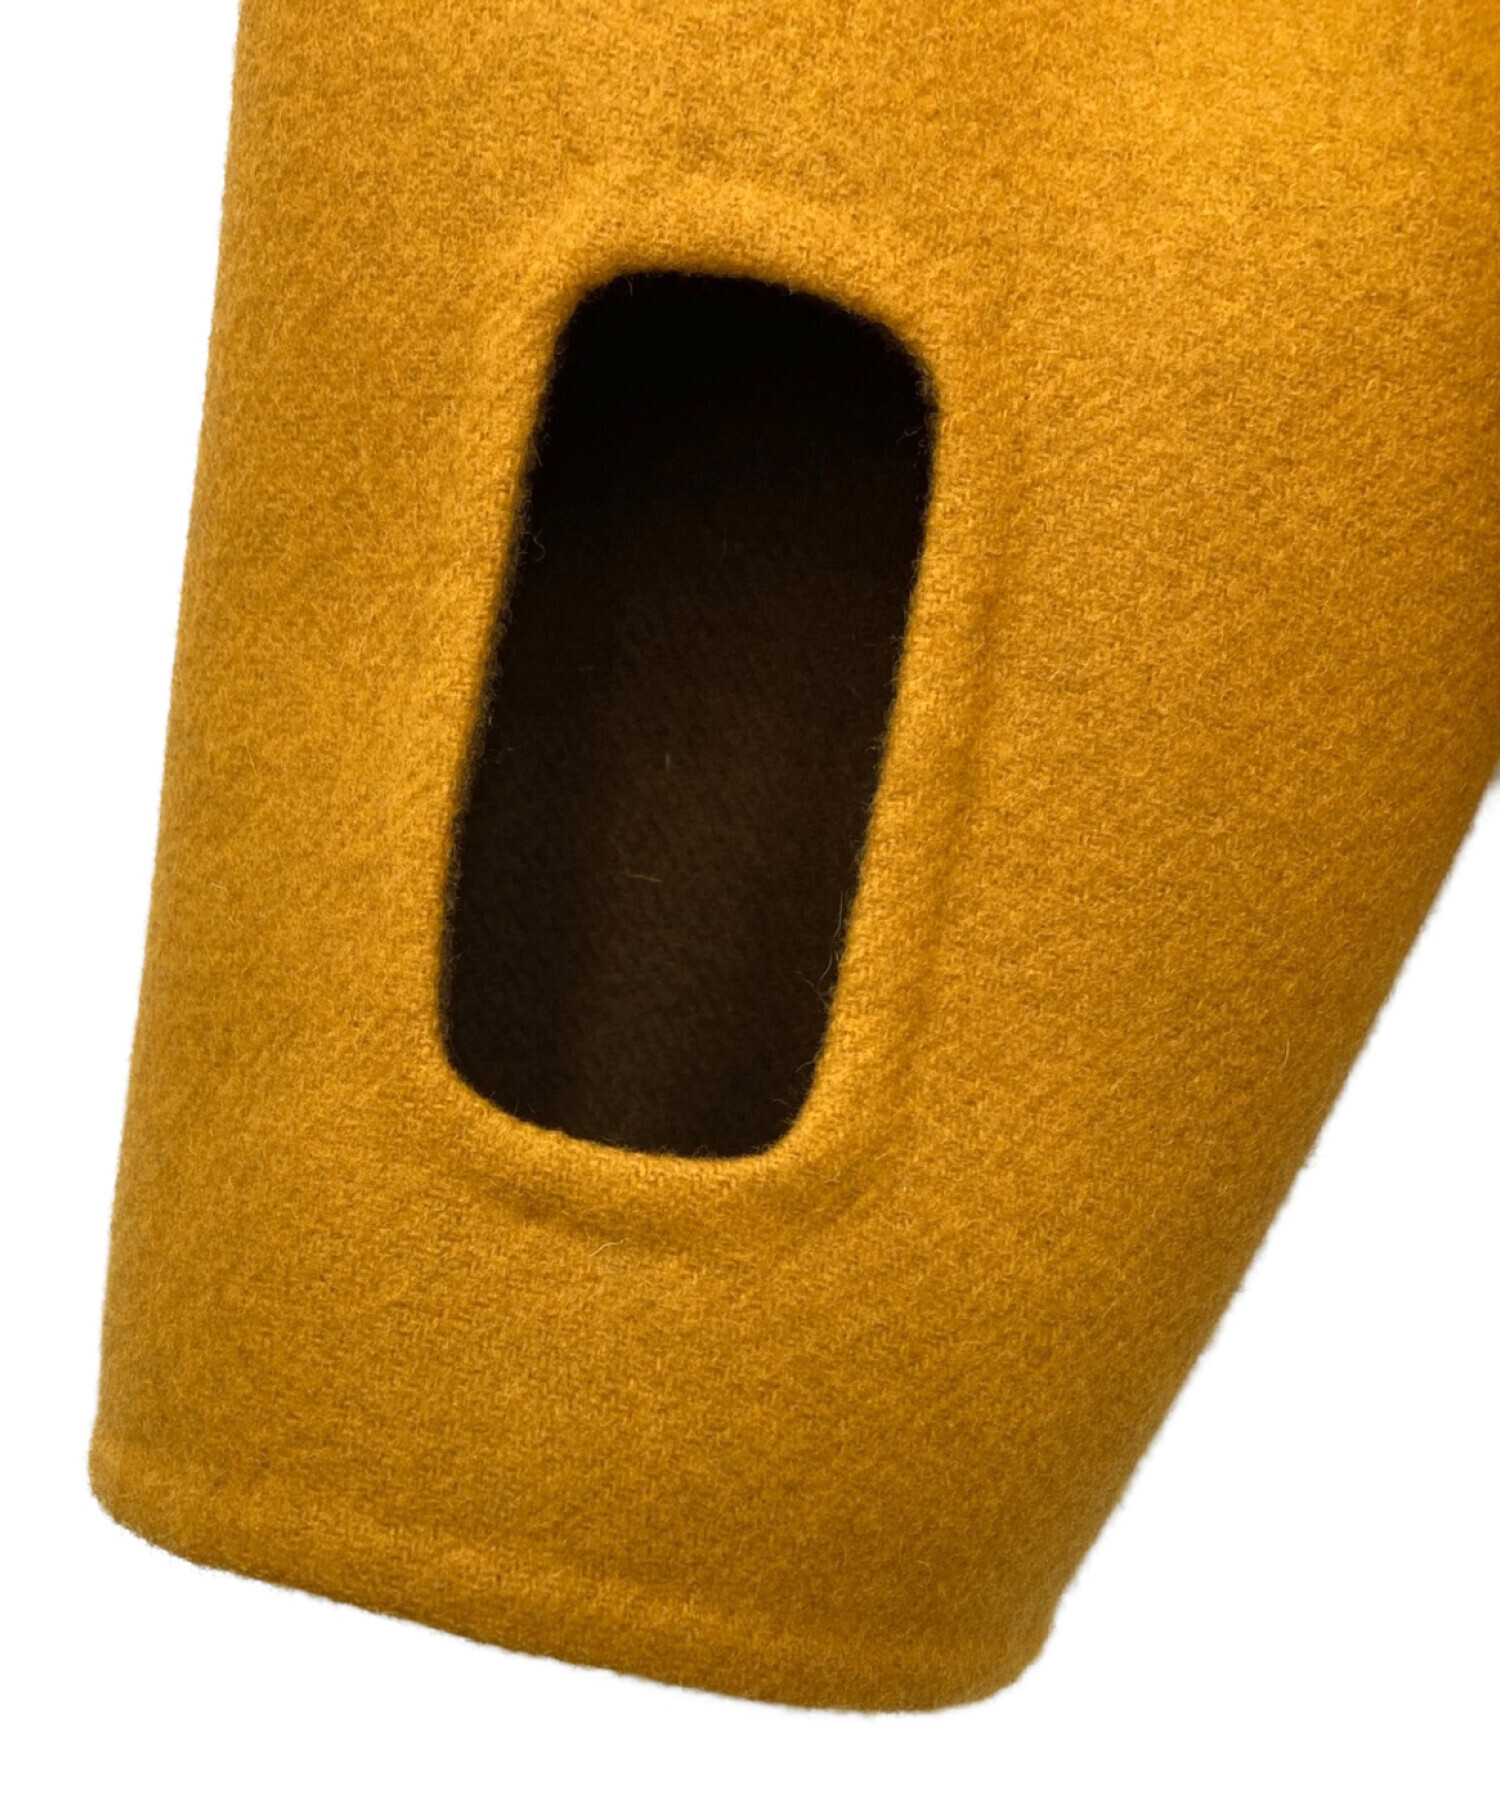 A-COLD-WALL (ア・コールド・ウォール) フレームワークジャケット オレンジ サイズ:L